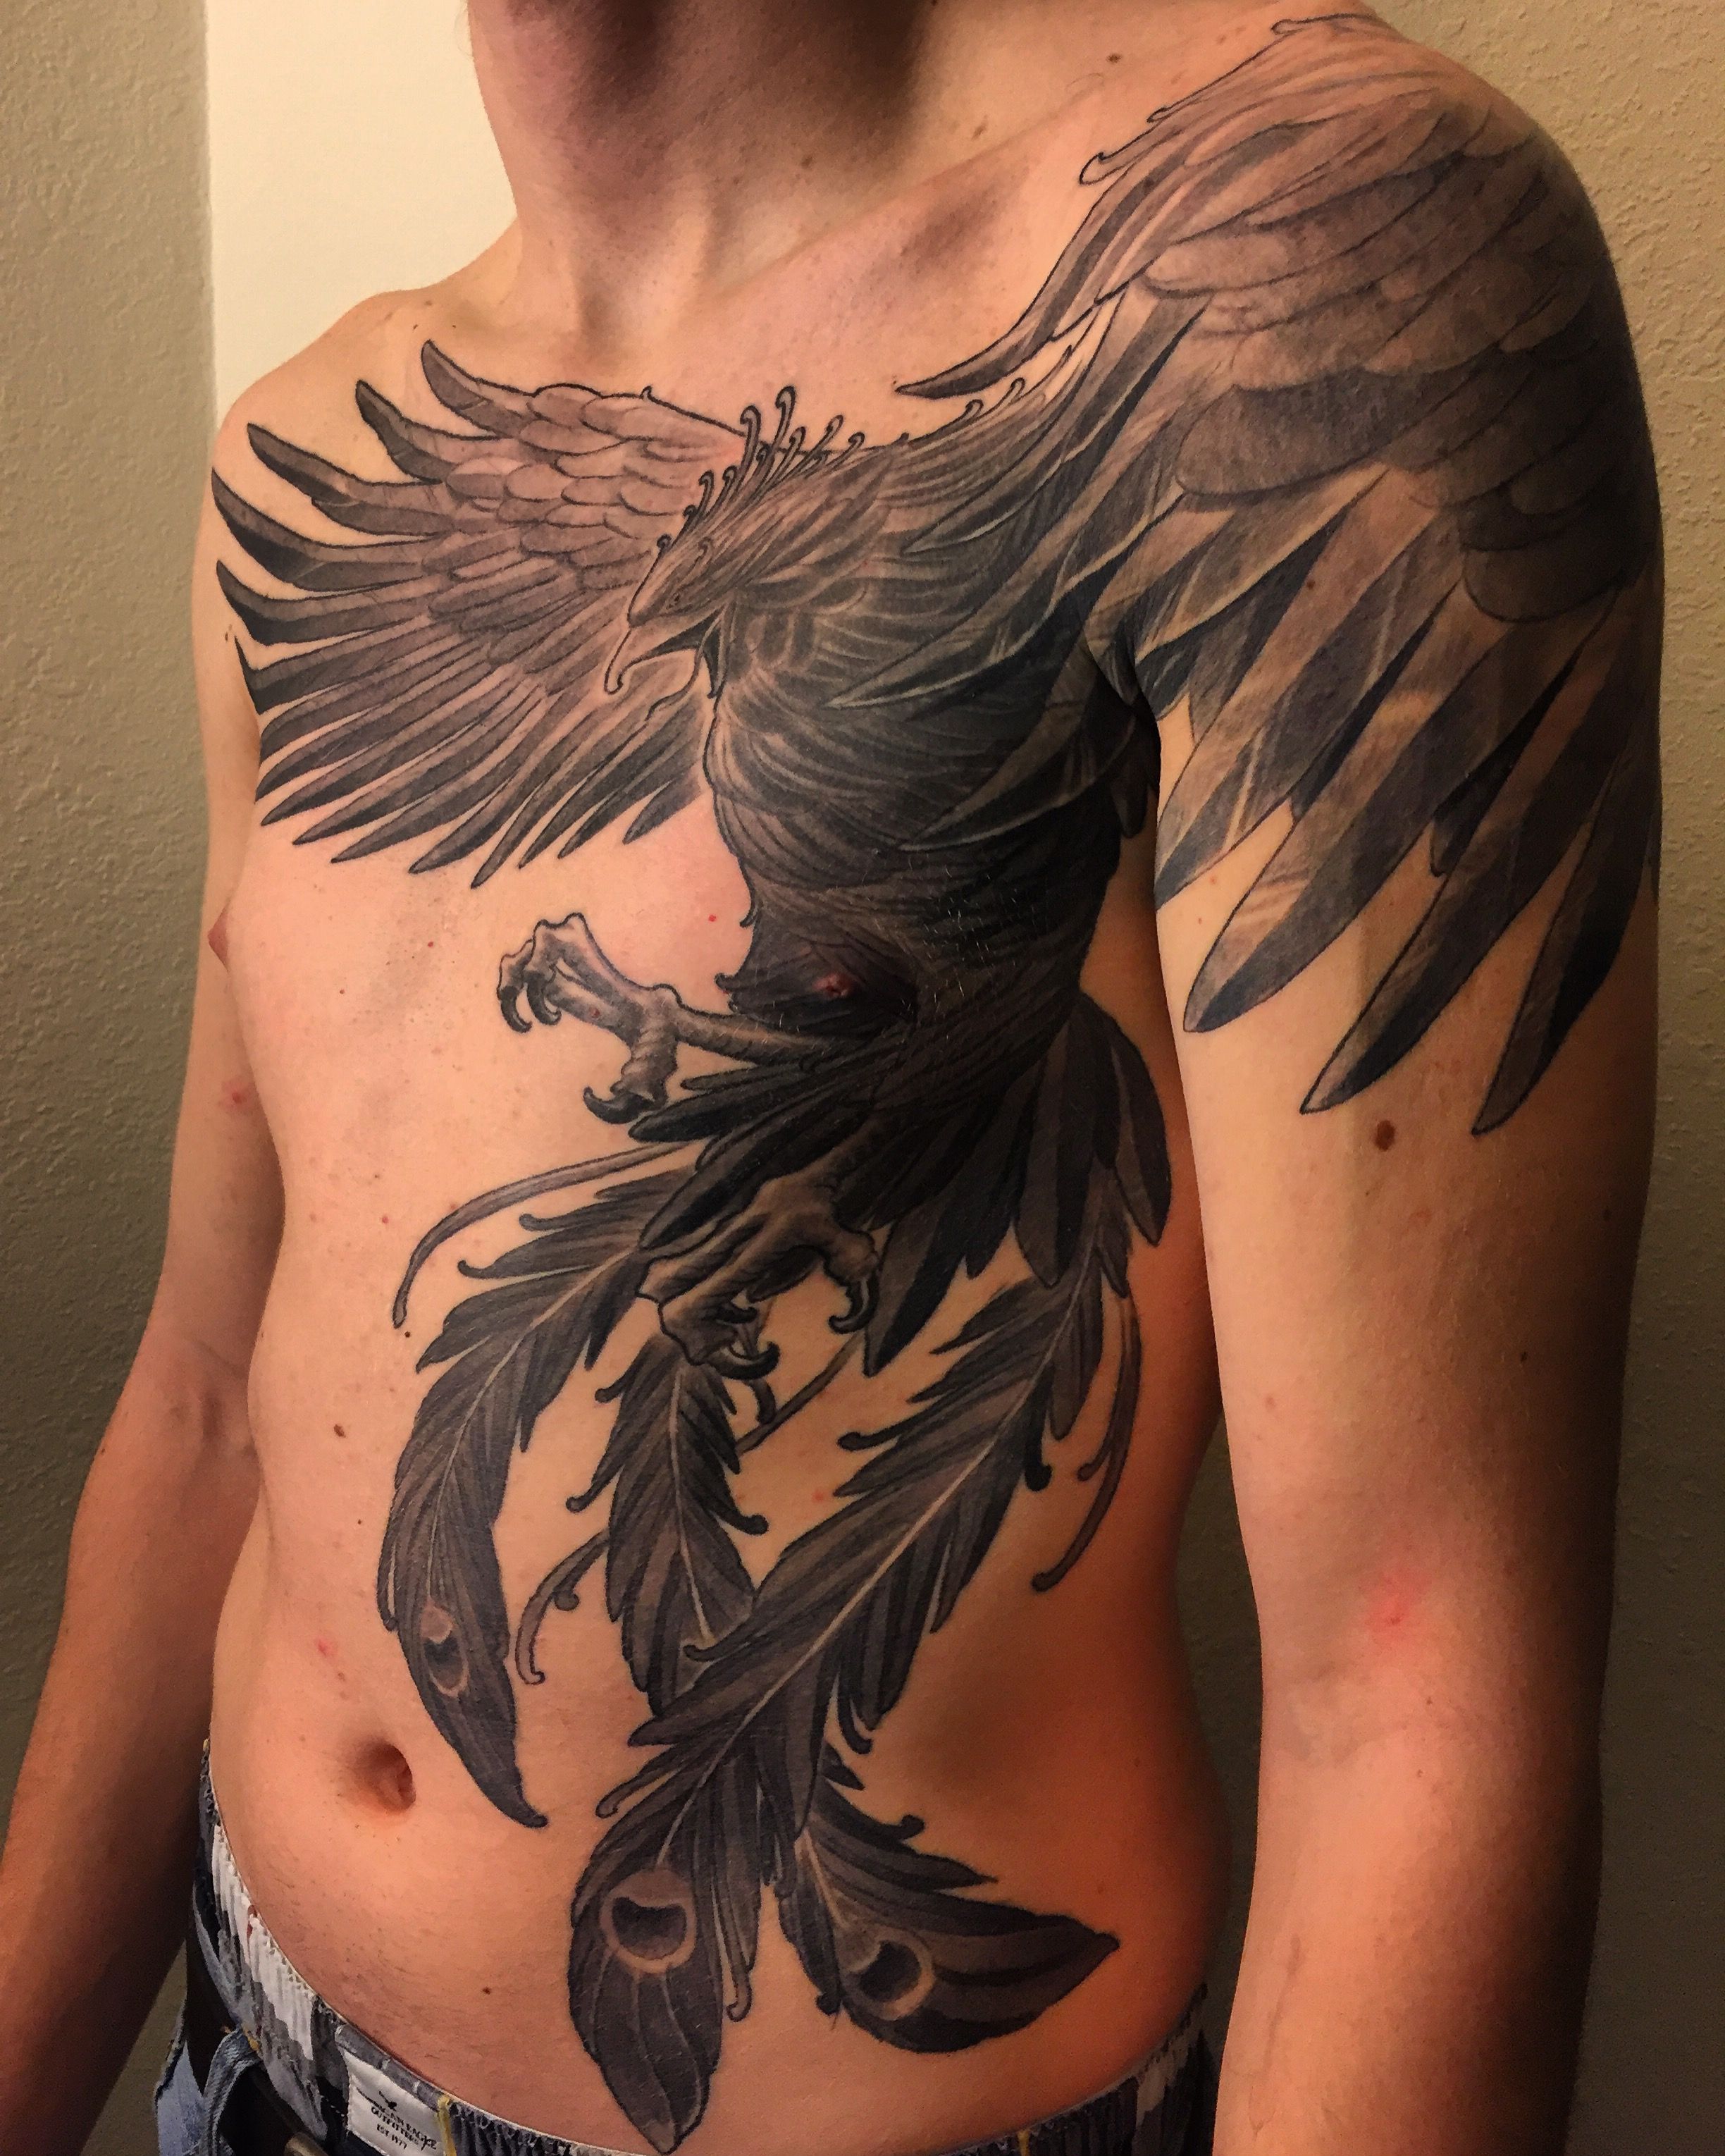 Snow W. reccomend Asian phoenix bird tattoo